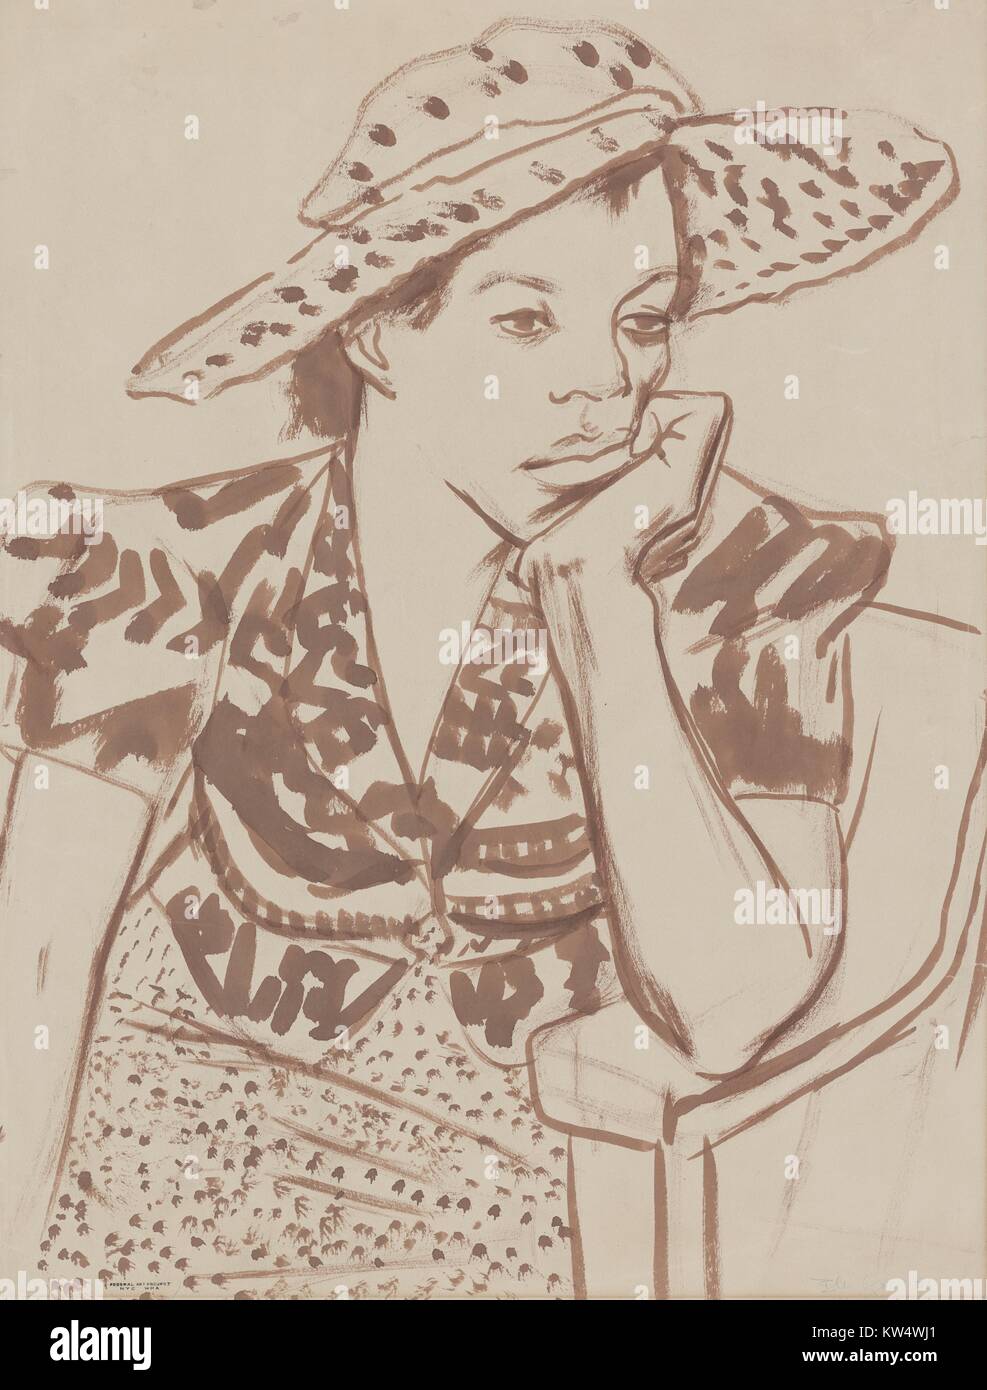 Arbeit Progress Administration (WPA) Malerei der afroamerikanischen Frau mit Hut im Studio sitzt, die gelangweilt, mit ihren Kopf auf ihre Hand, 1939. Von der New York Public Library. Stockfoto